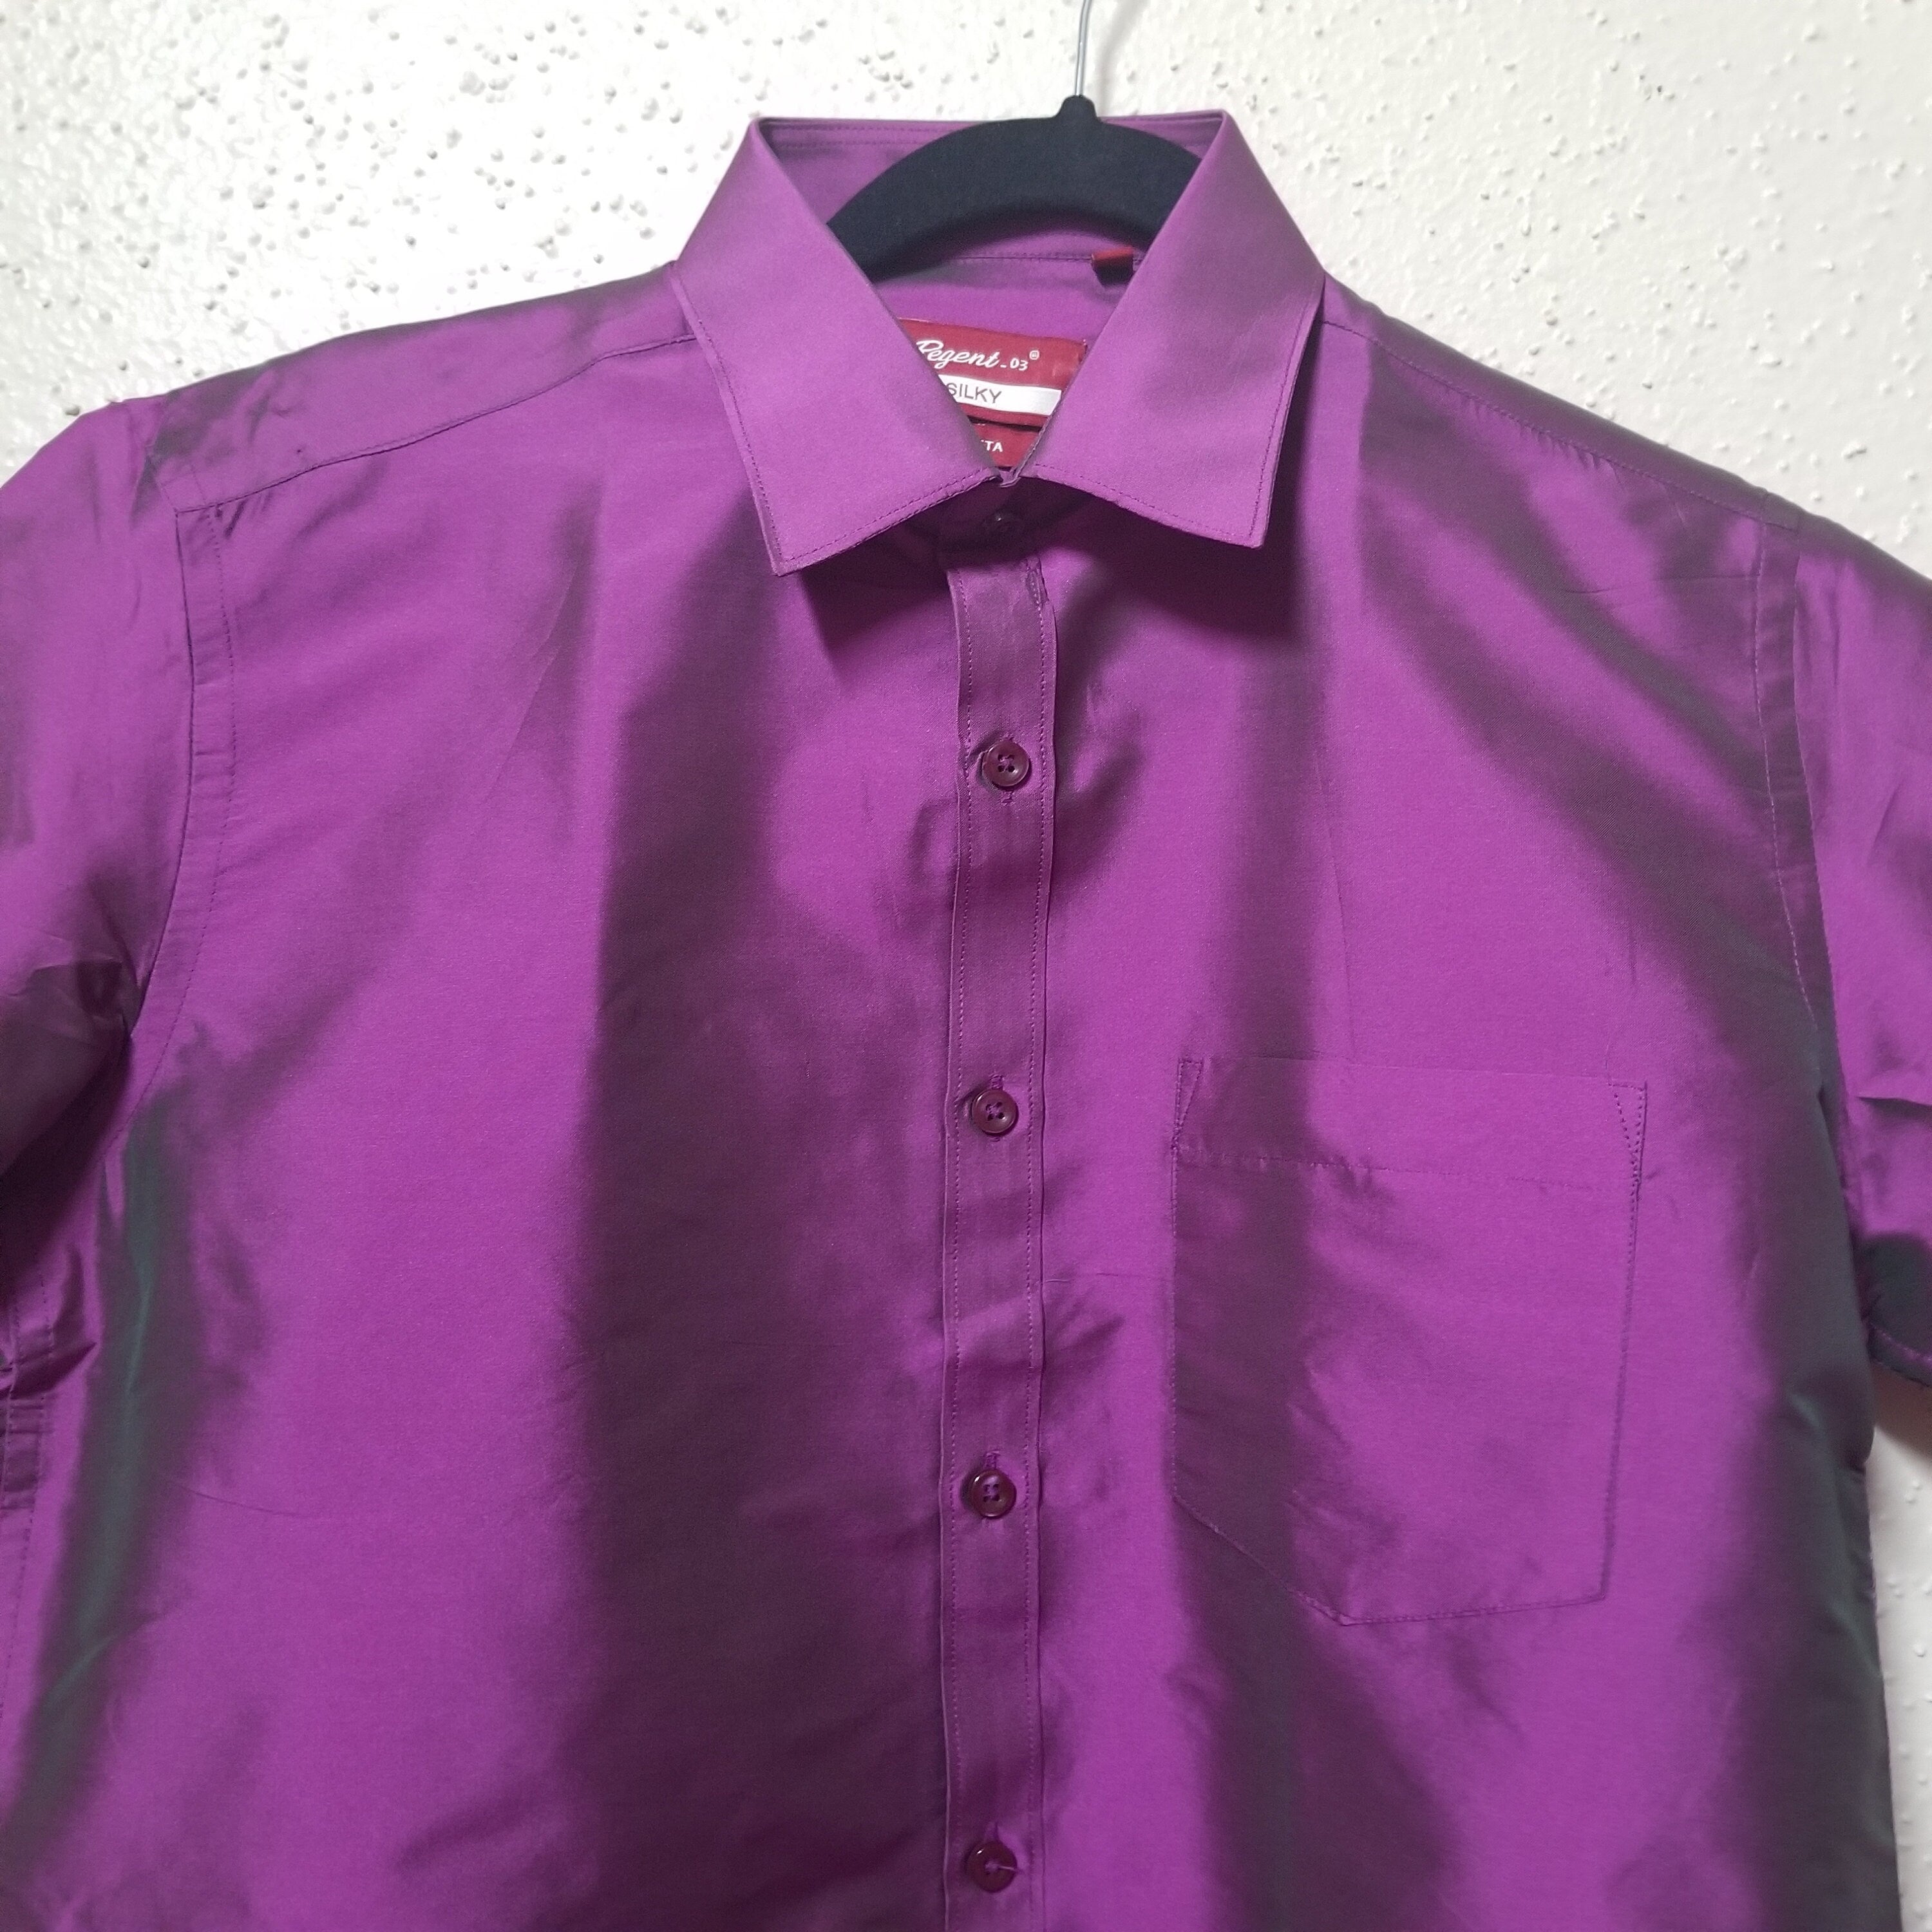 Men's Silk Shirt - Half Hand - Violet Color - Size 38 - M Size - Partywear Shirt - Indian Dresses